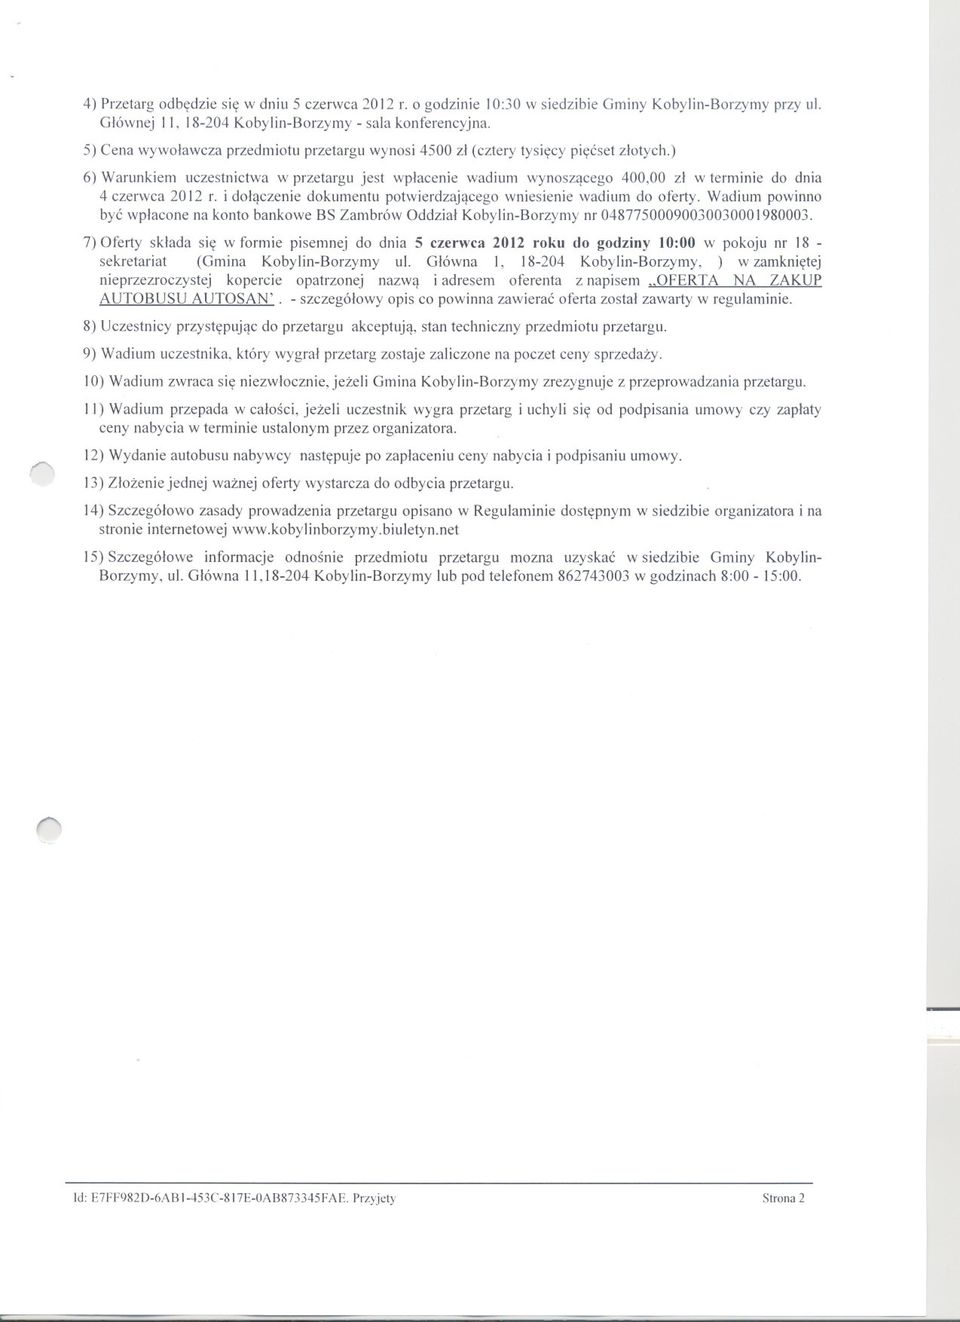 ) 6) Warunkiem uczestnictwa w przetargu jest wplacenie wadium wynoszacego 400,00 zl w terminie do dnia 4 czerwca 2012 r. i dolaczenie dokumentu potwierdzajacego wniesienie wadium do oferty.